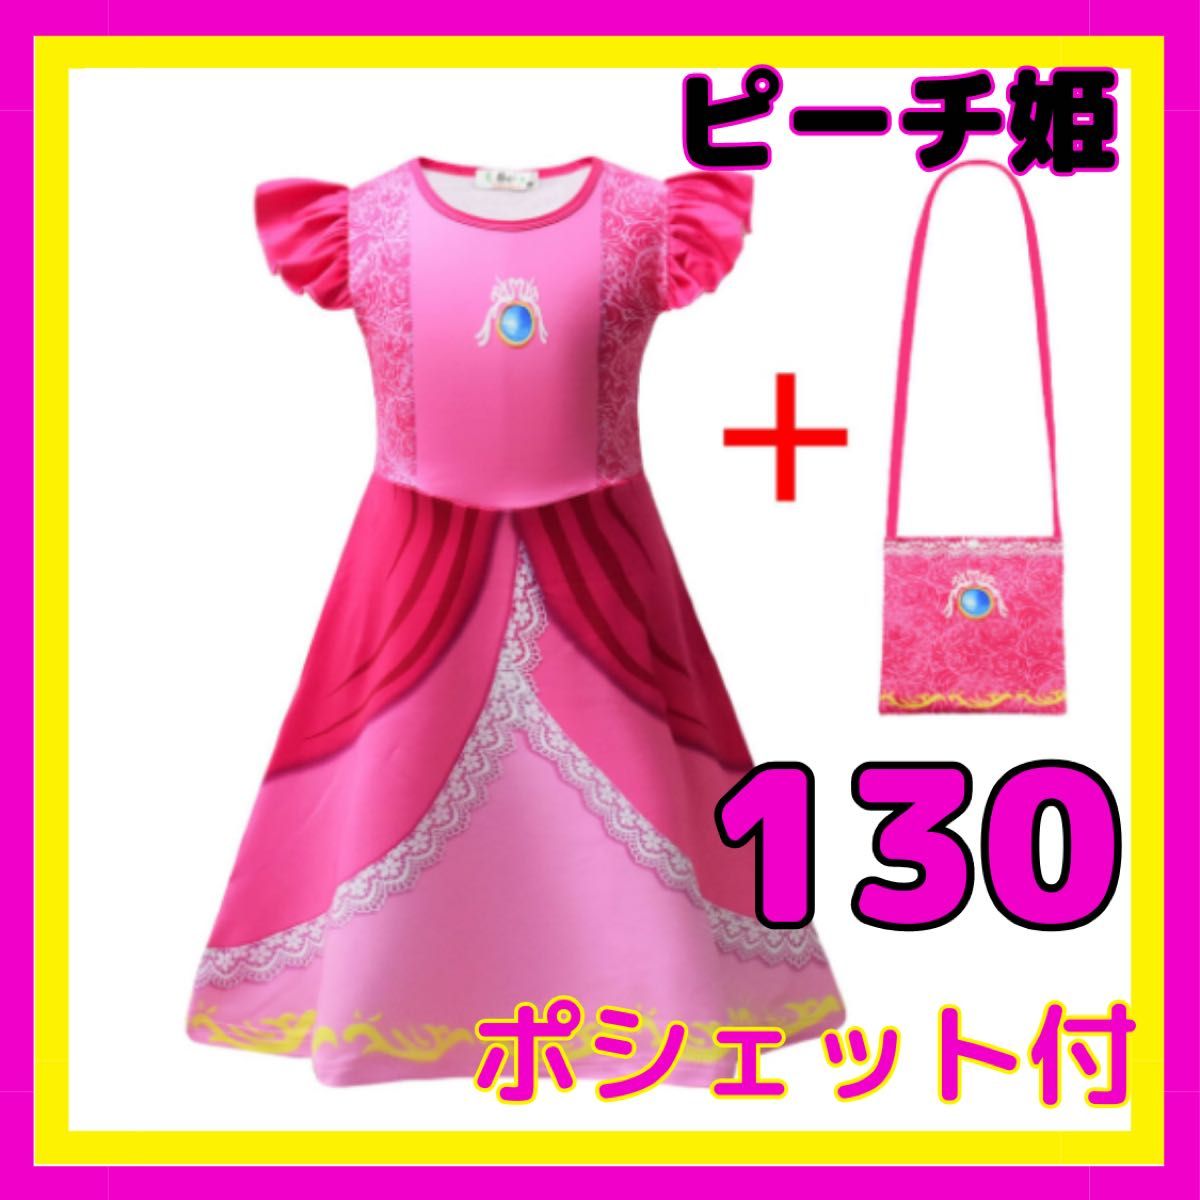 130 ピーチ姫 ドレス ワンピース USJ プリンセス コスプレ ハロウィン 女の子 ワンピ なりきり 仮装 コスチューム 